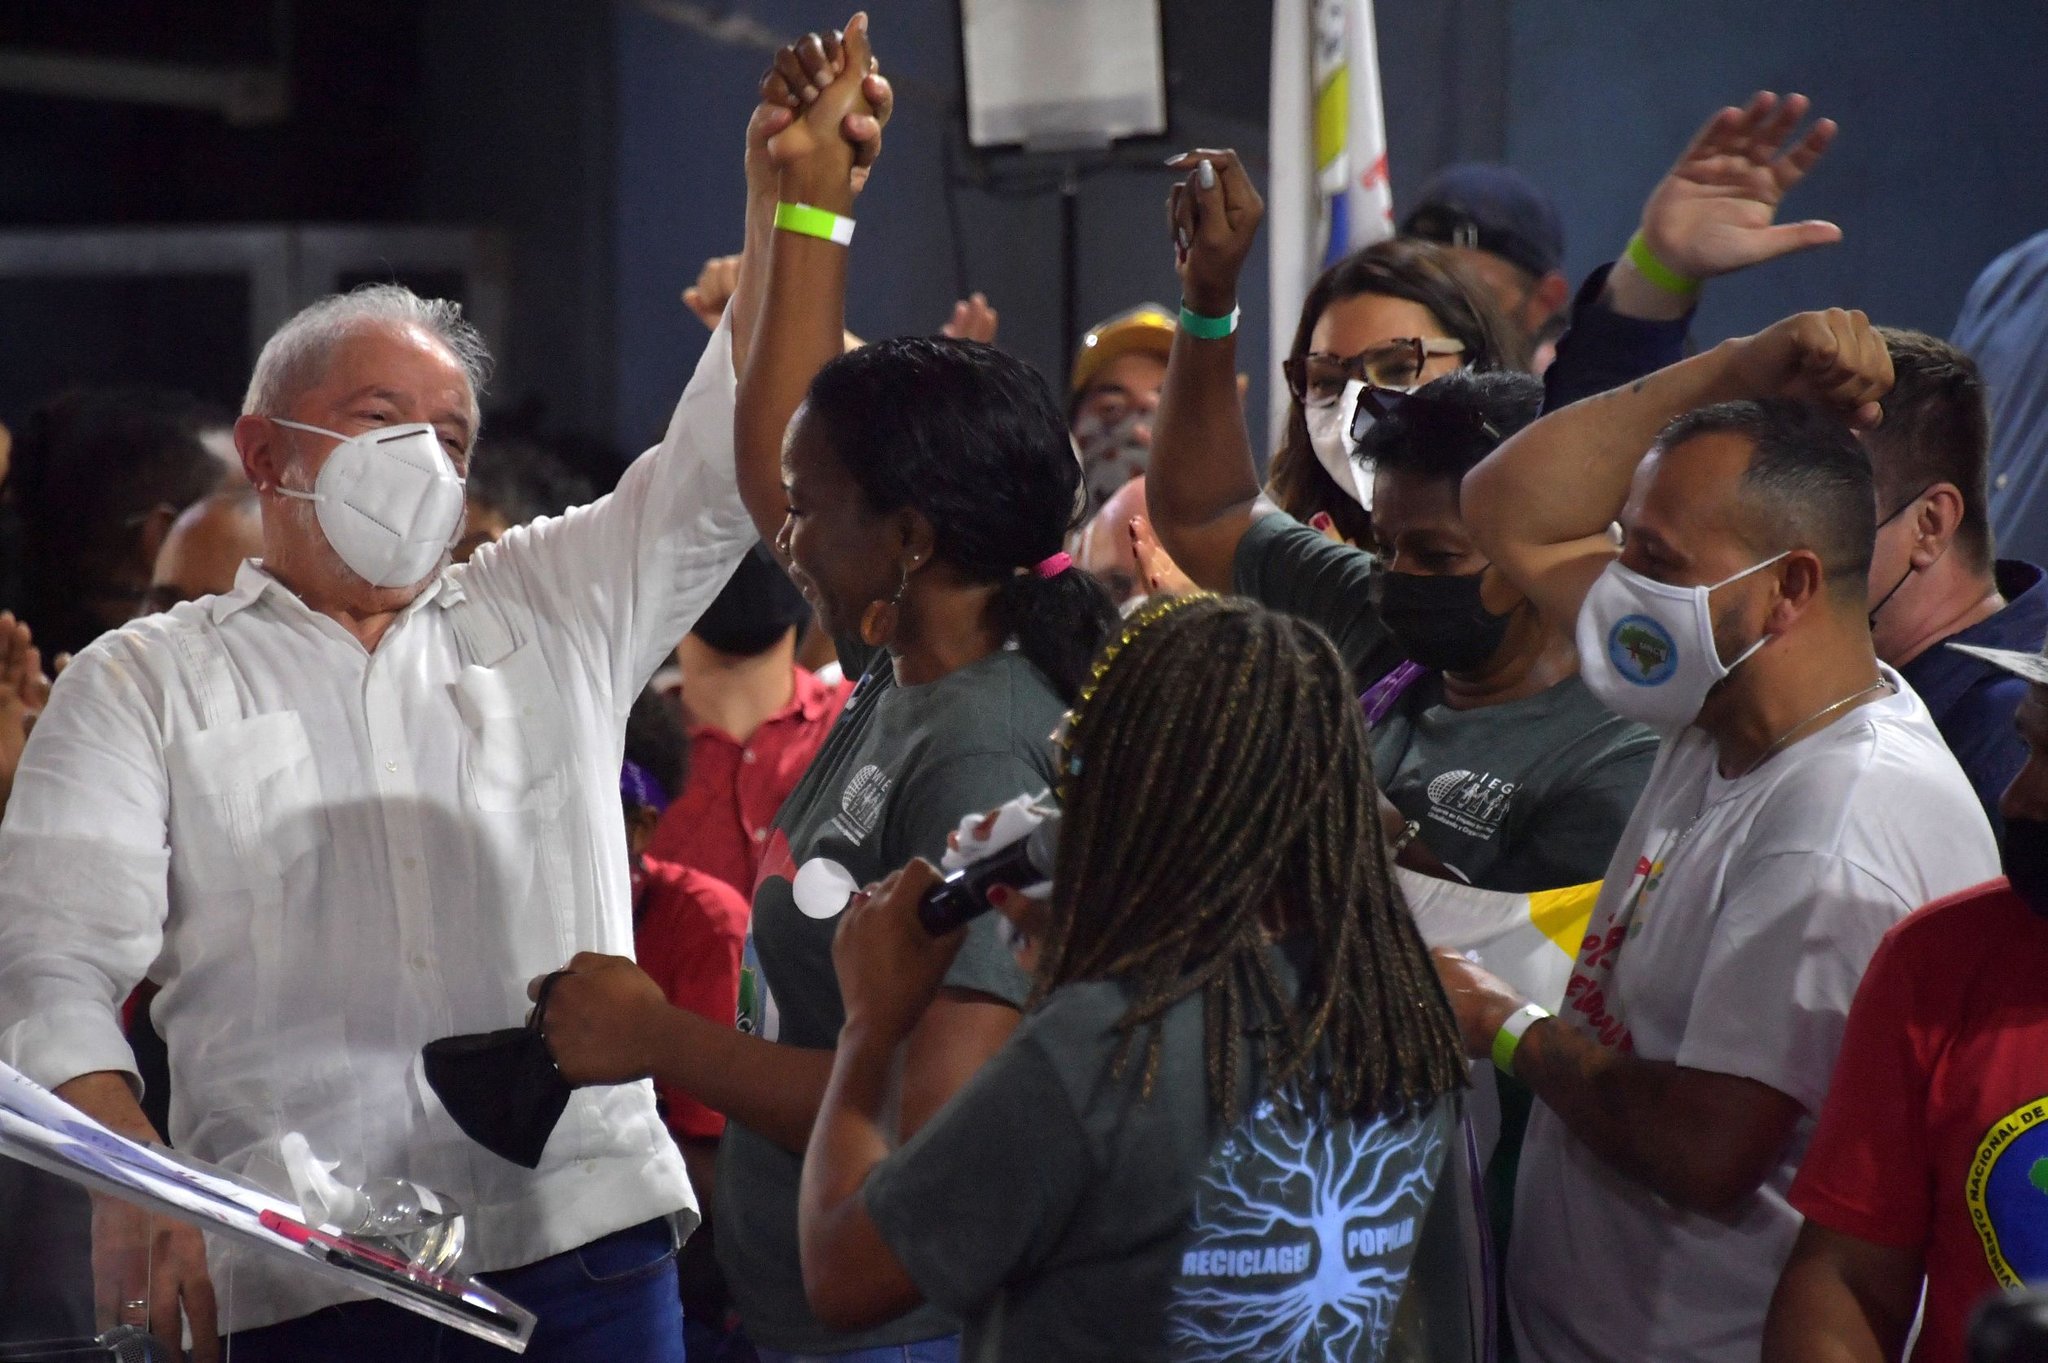 지난해 12월 22일 상파울루에서 지지자들과 만난 룰라 전 대통령. AFP=연합뉴스